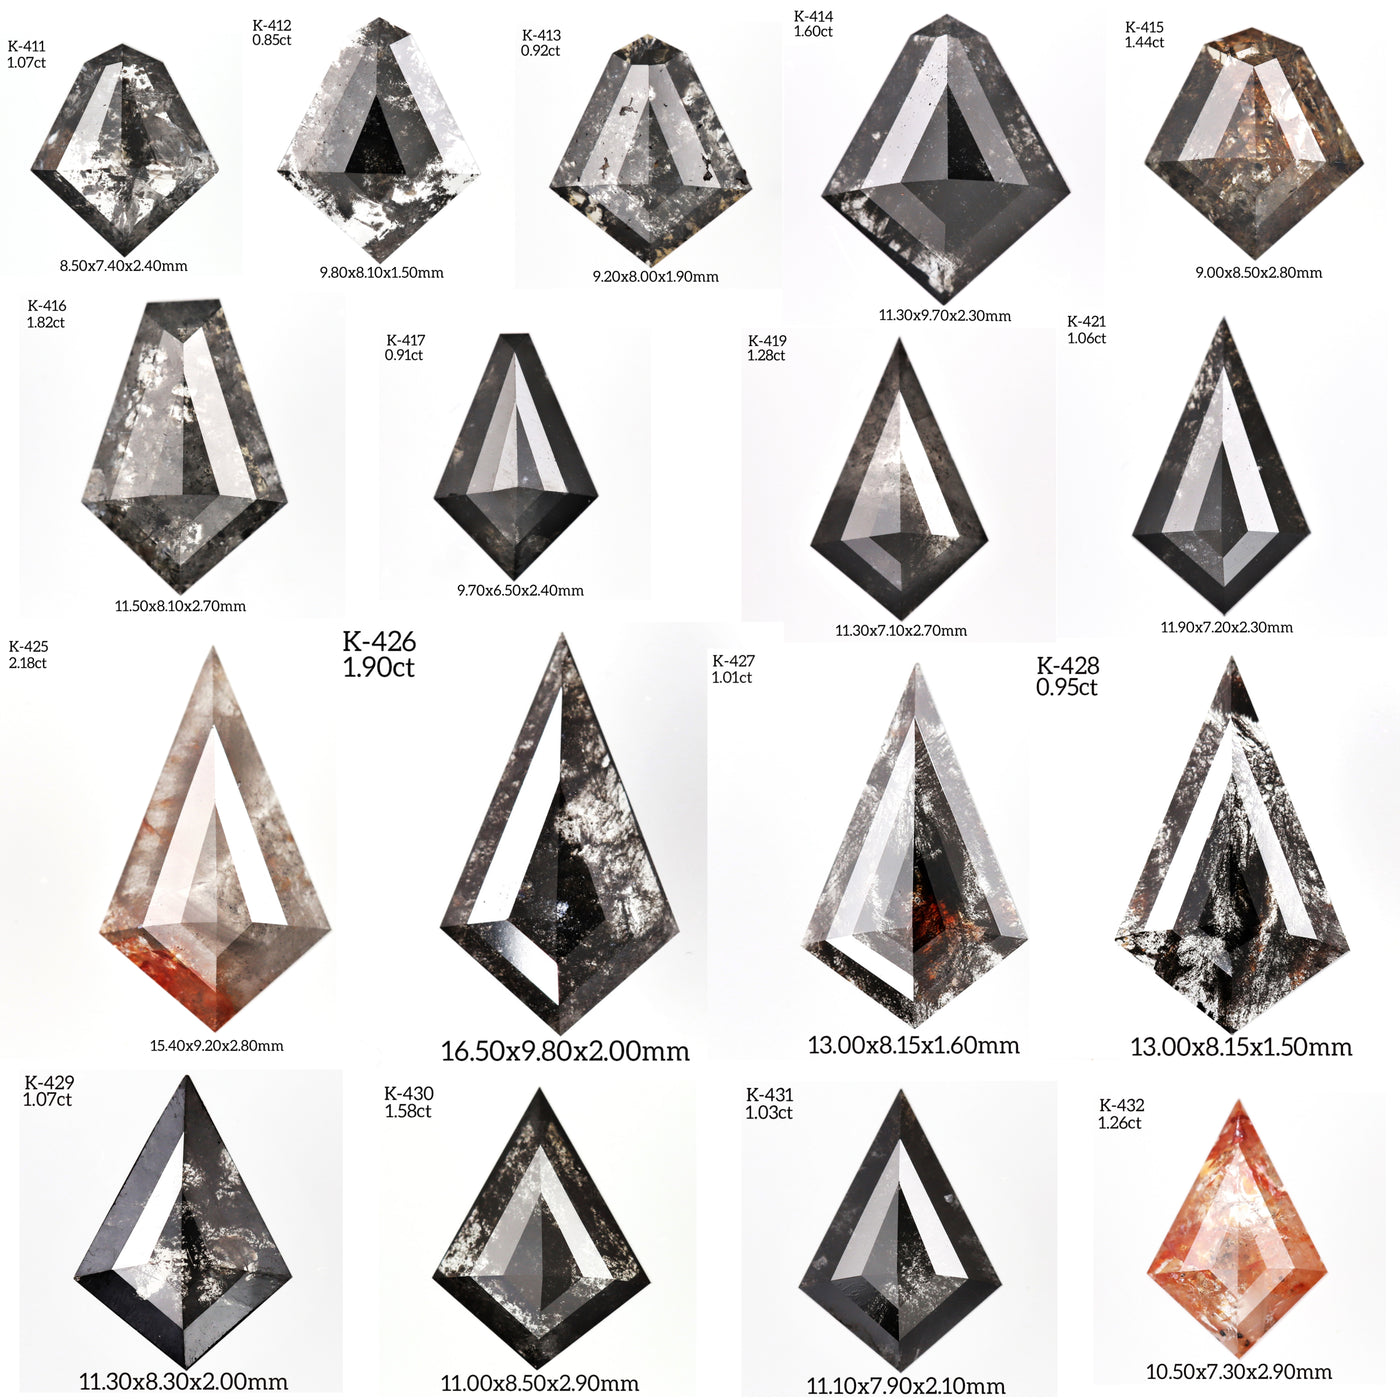 K431 - Salt and pepper kite diamond